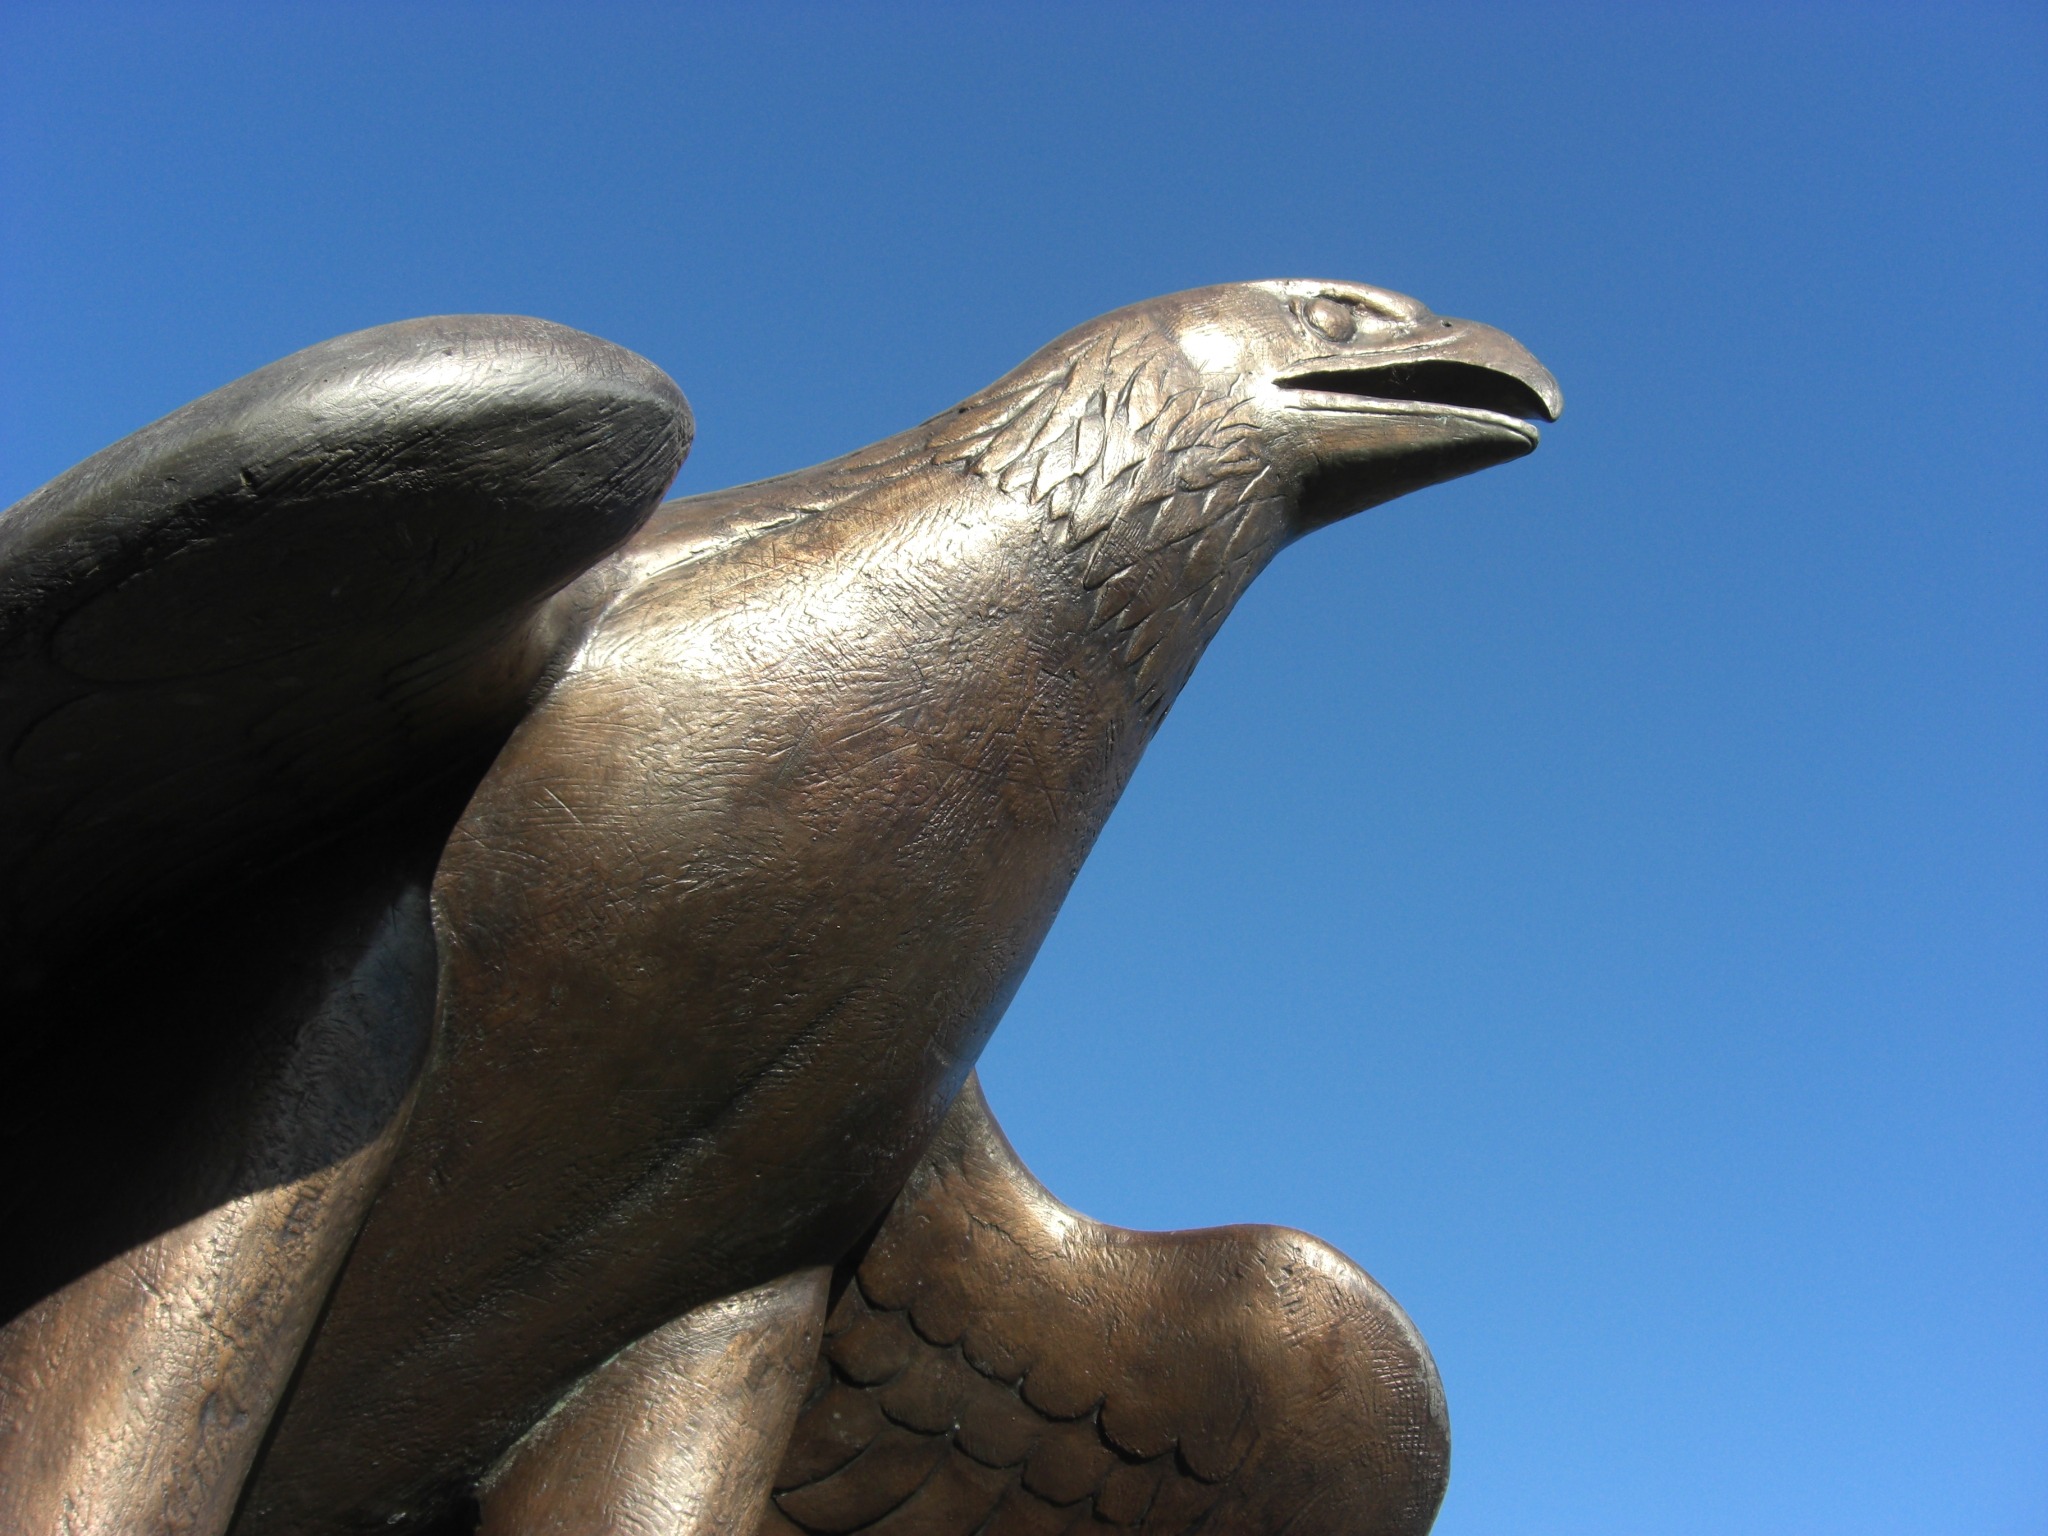 Adler, bronze statue at blue sky free image download